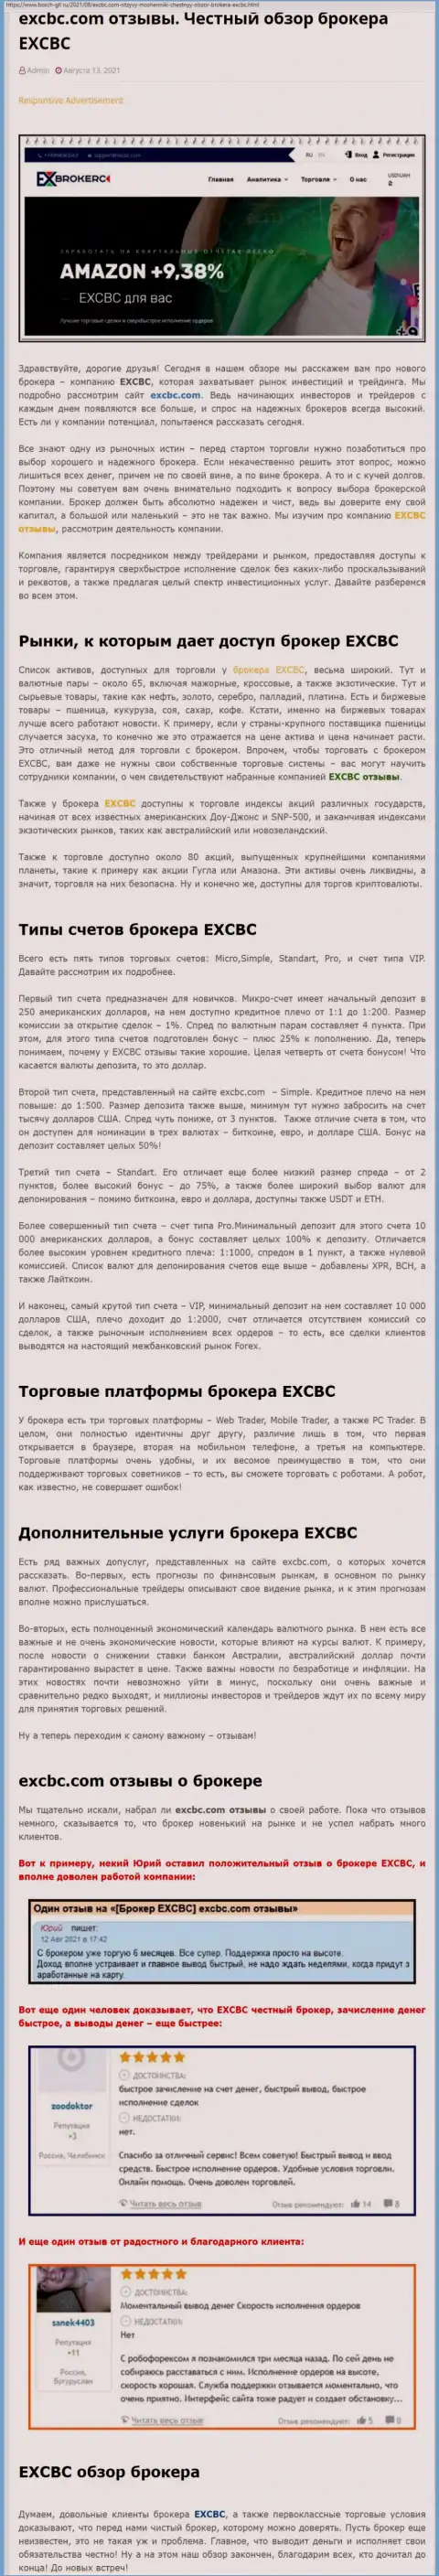 Информация об ФОРЕКС-брокерской организации EXCBC на интернет-сервисе Bosch Gll Ru